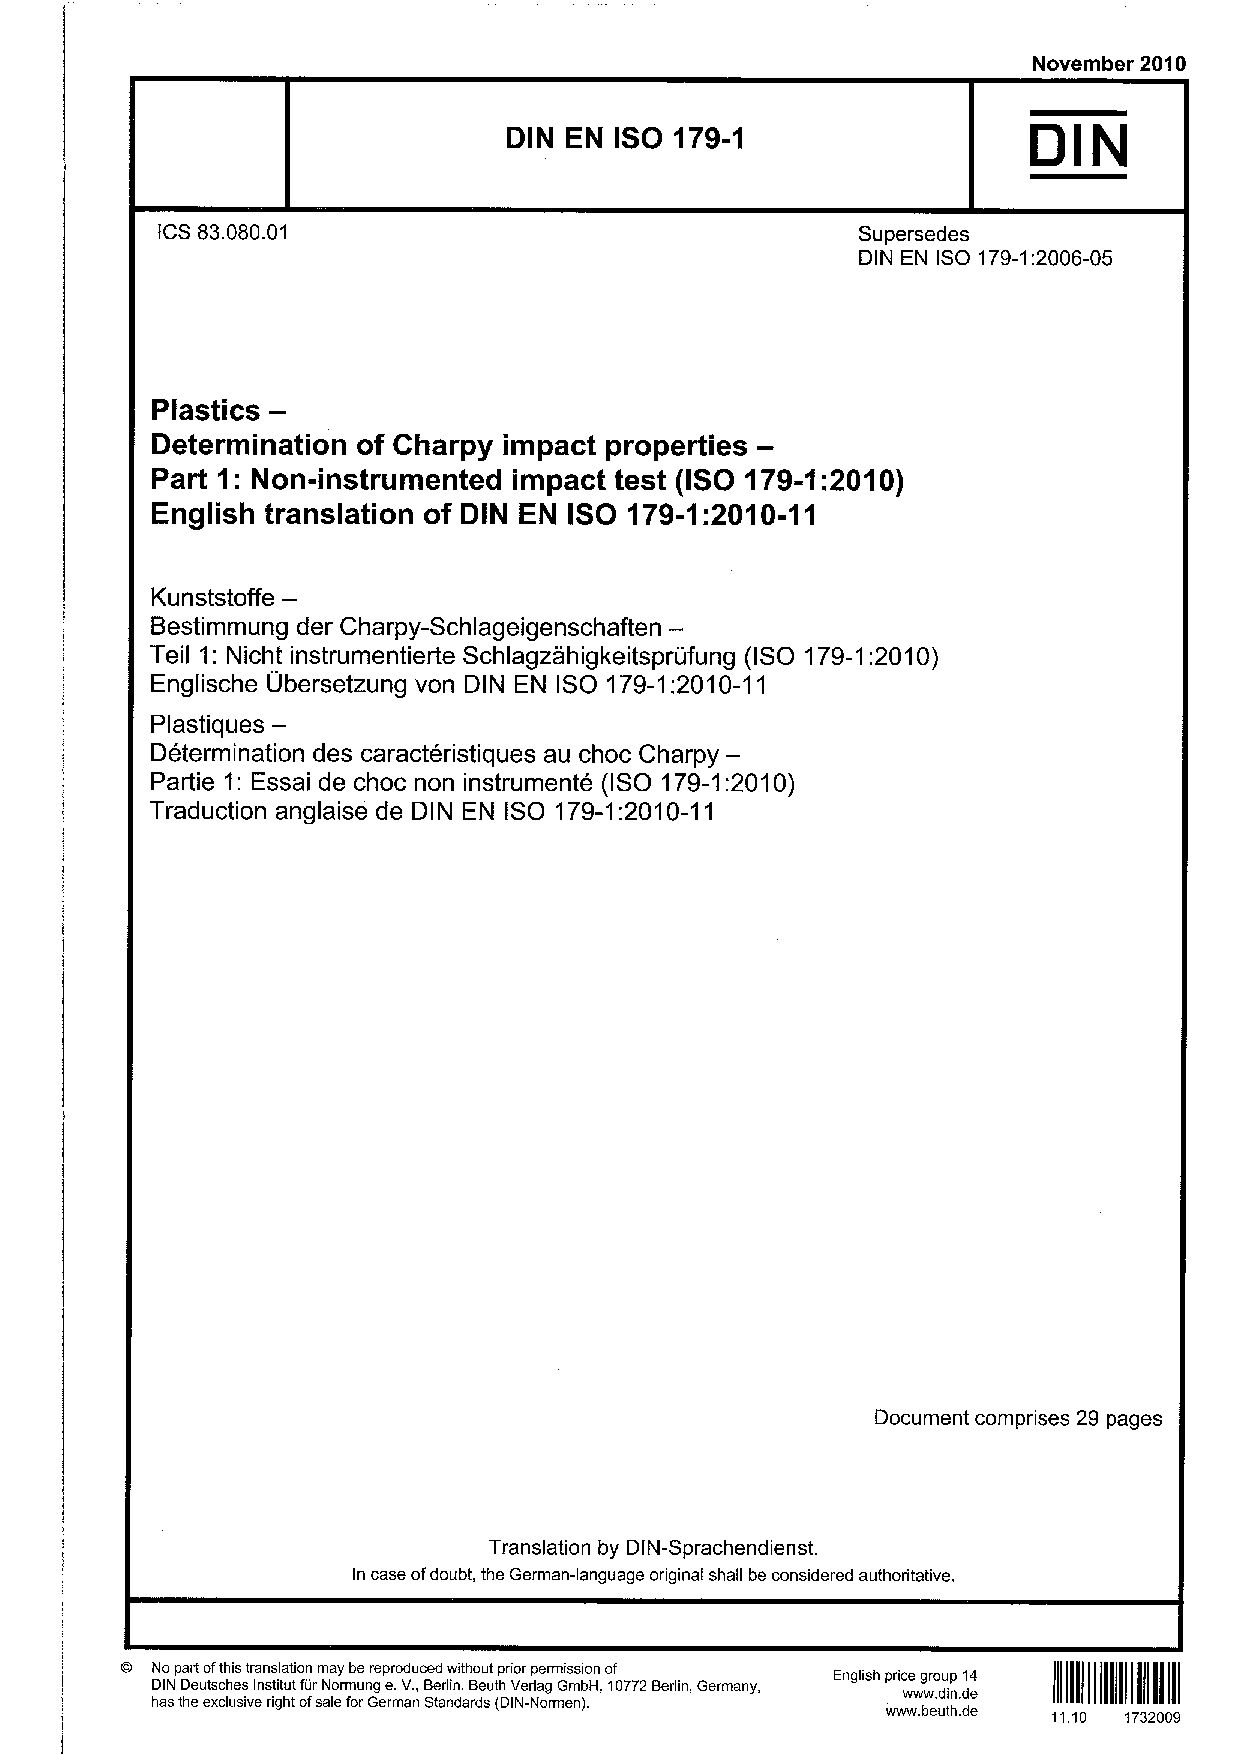 DIN EN ISO 179-1:2010封面图